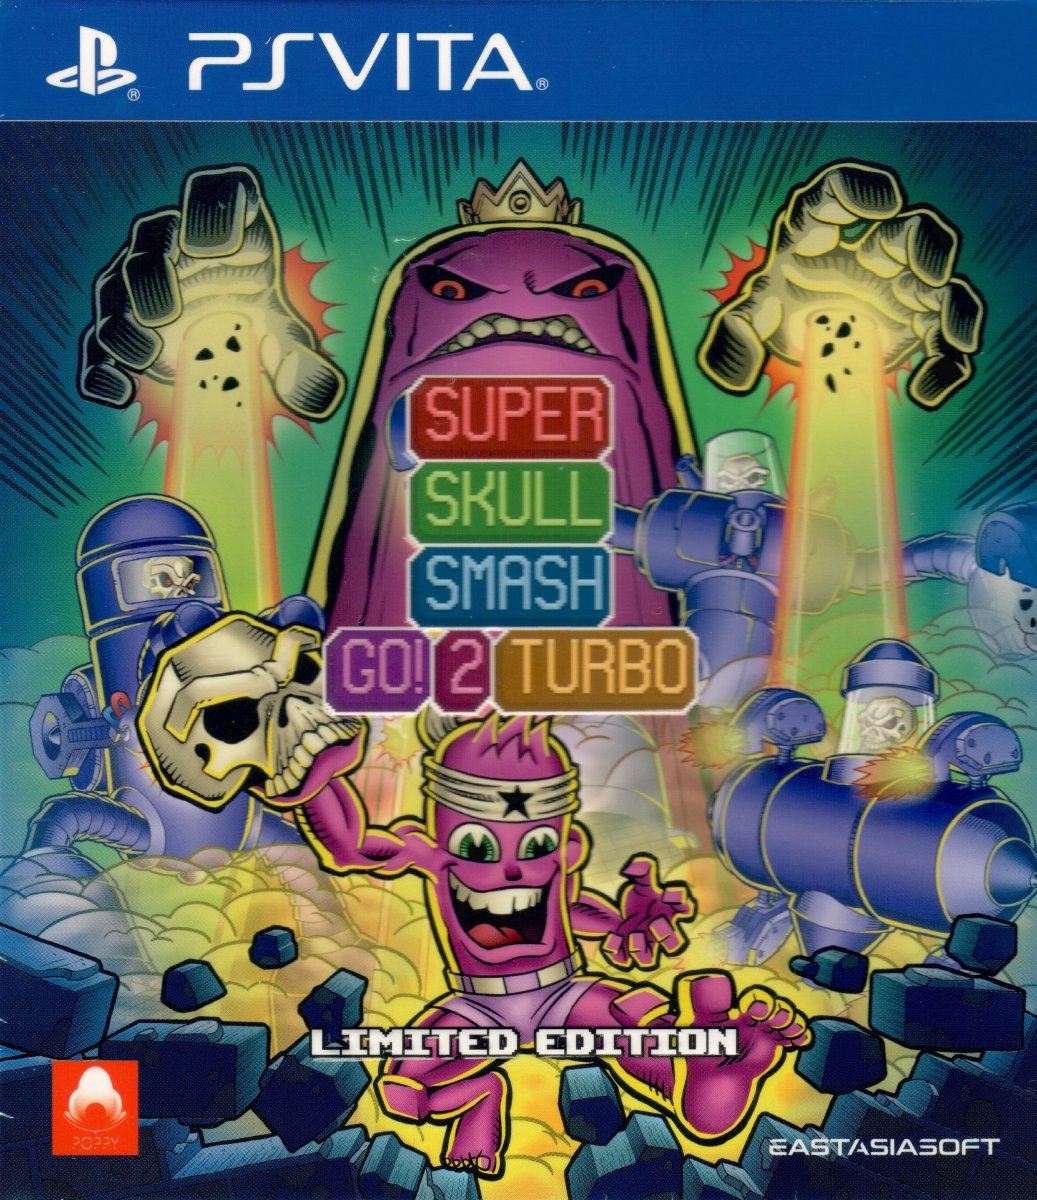 Super Skull Smash Go! 2 Turbo - Playstation Vita - Retro Island Gaming